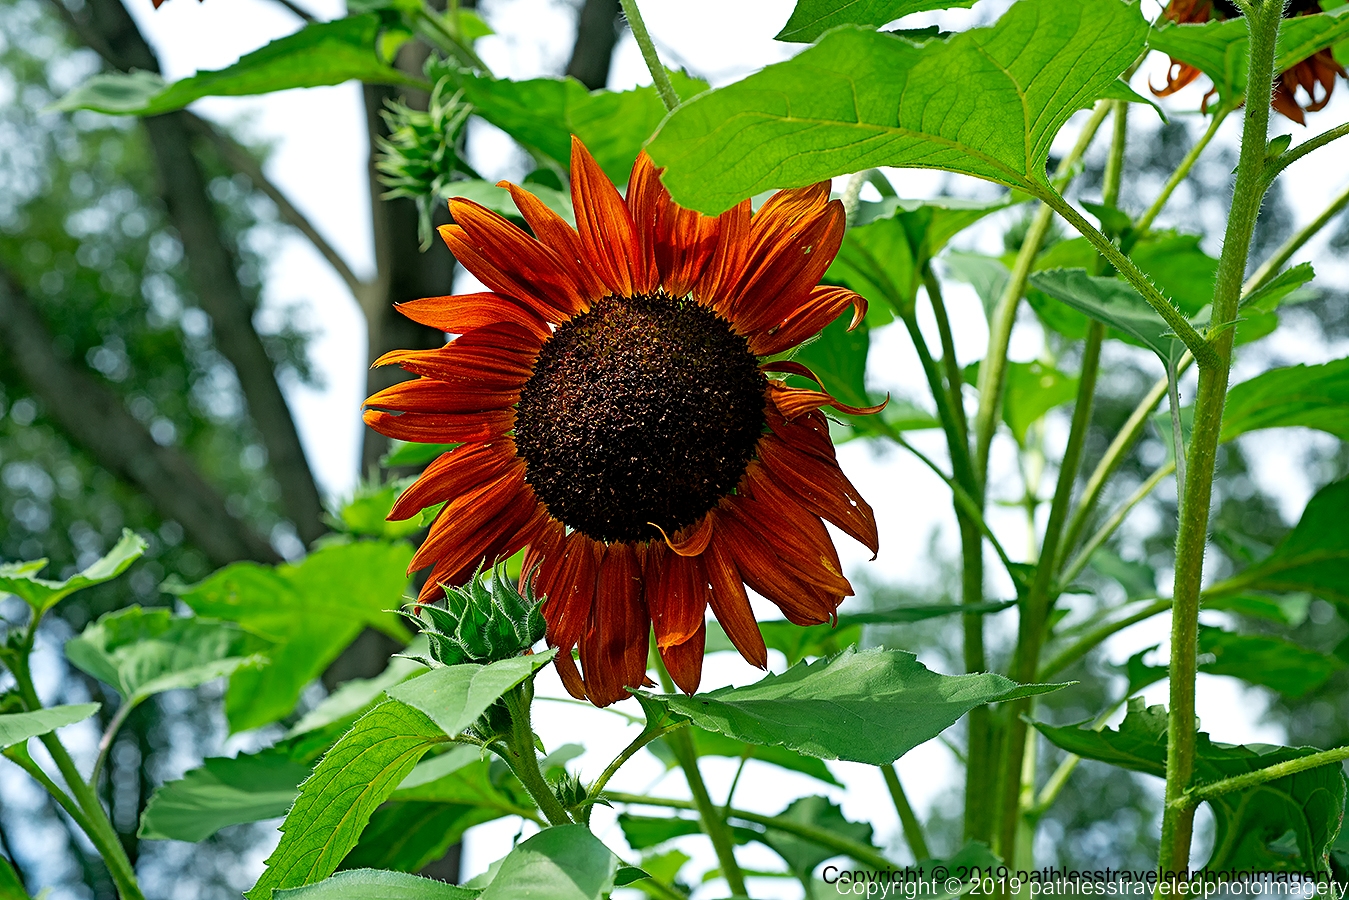 1908_1560a.jpg - Sunflower